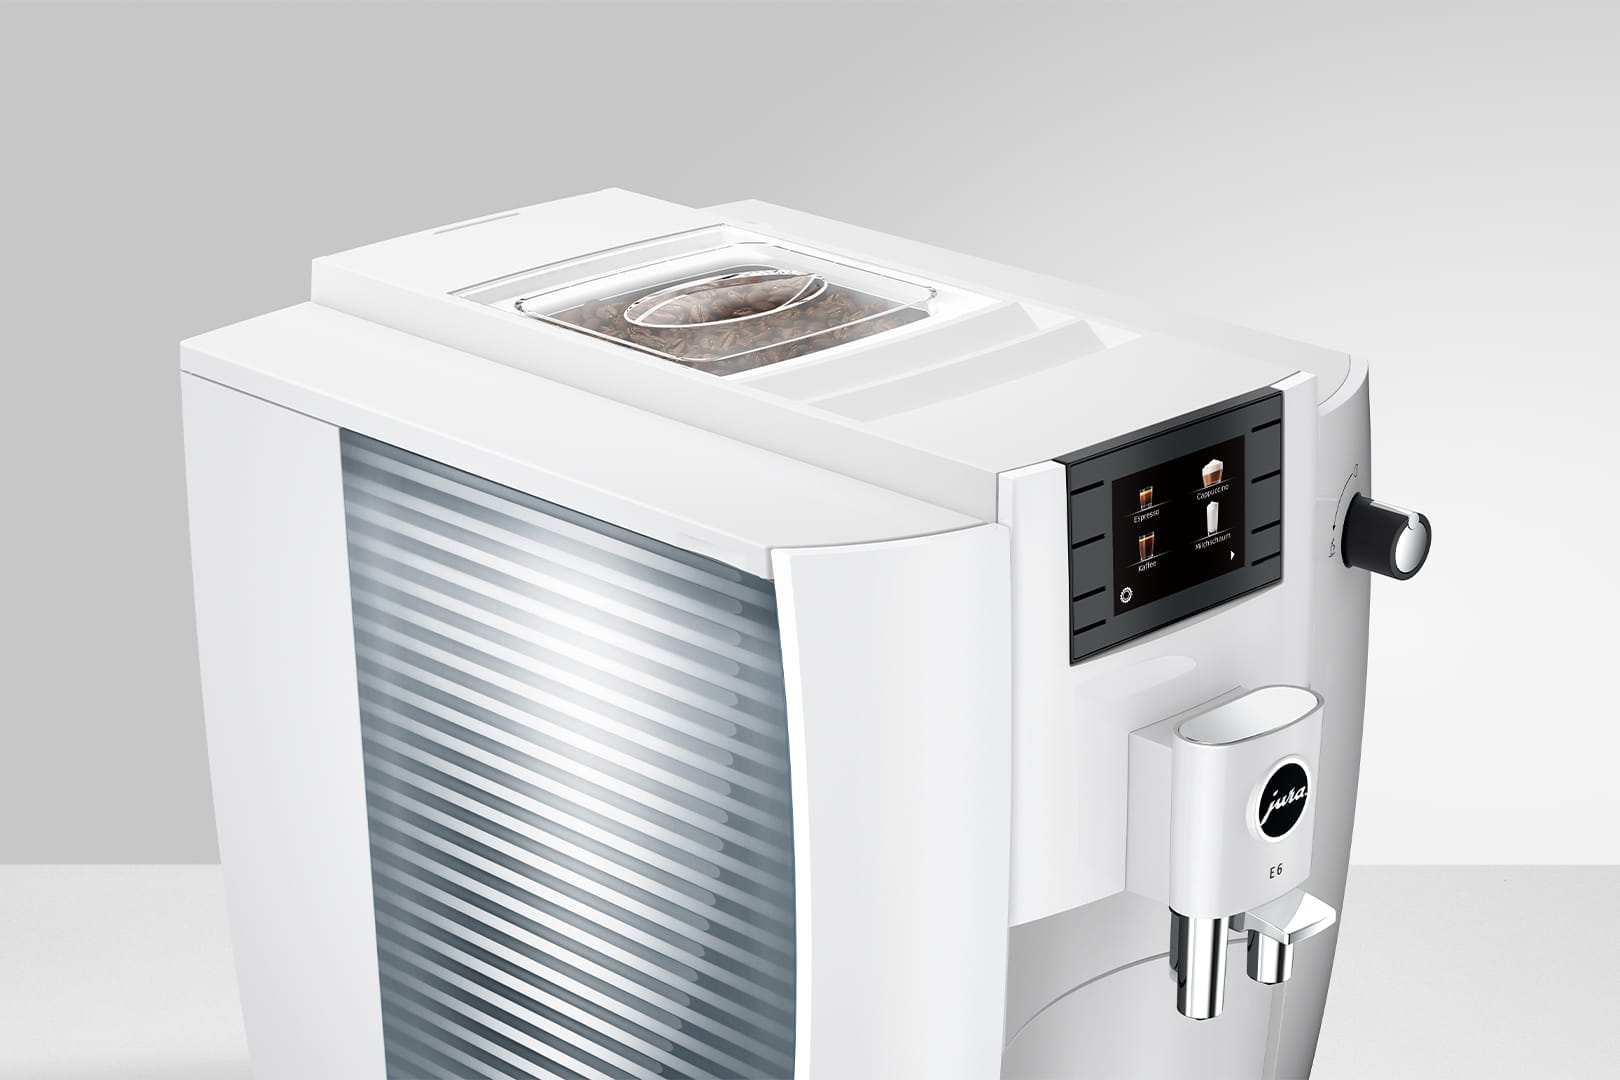  Jura E6 Máquina de café expreso automática y asequible con  fuerza de café programable (platino) paquete con cartucho de filtro  inteligente, tabletas de limpieza, bolsa de granos de café y recipiente 